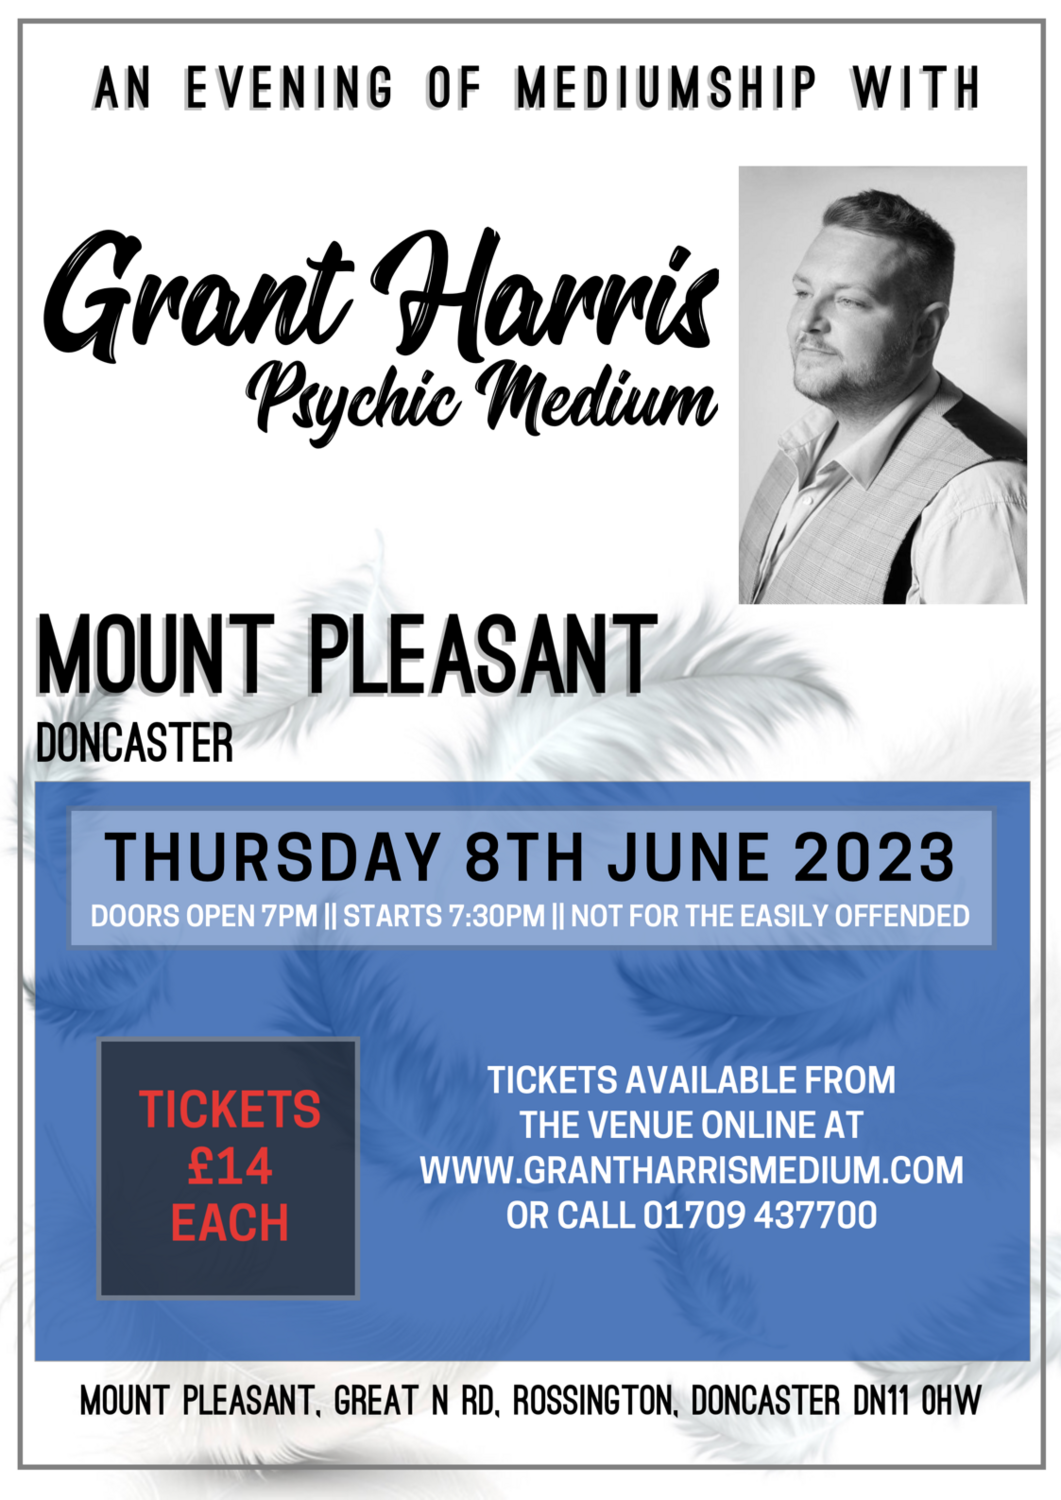 Mount Pleasant Hotel, Doncaster, Thursday 8th June 2023